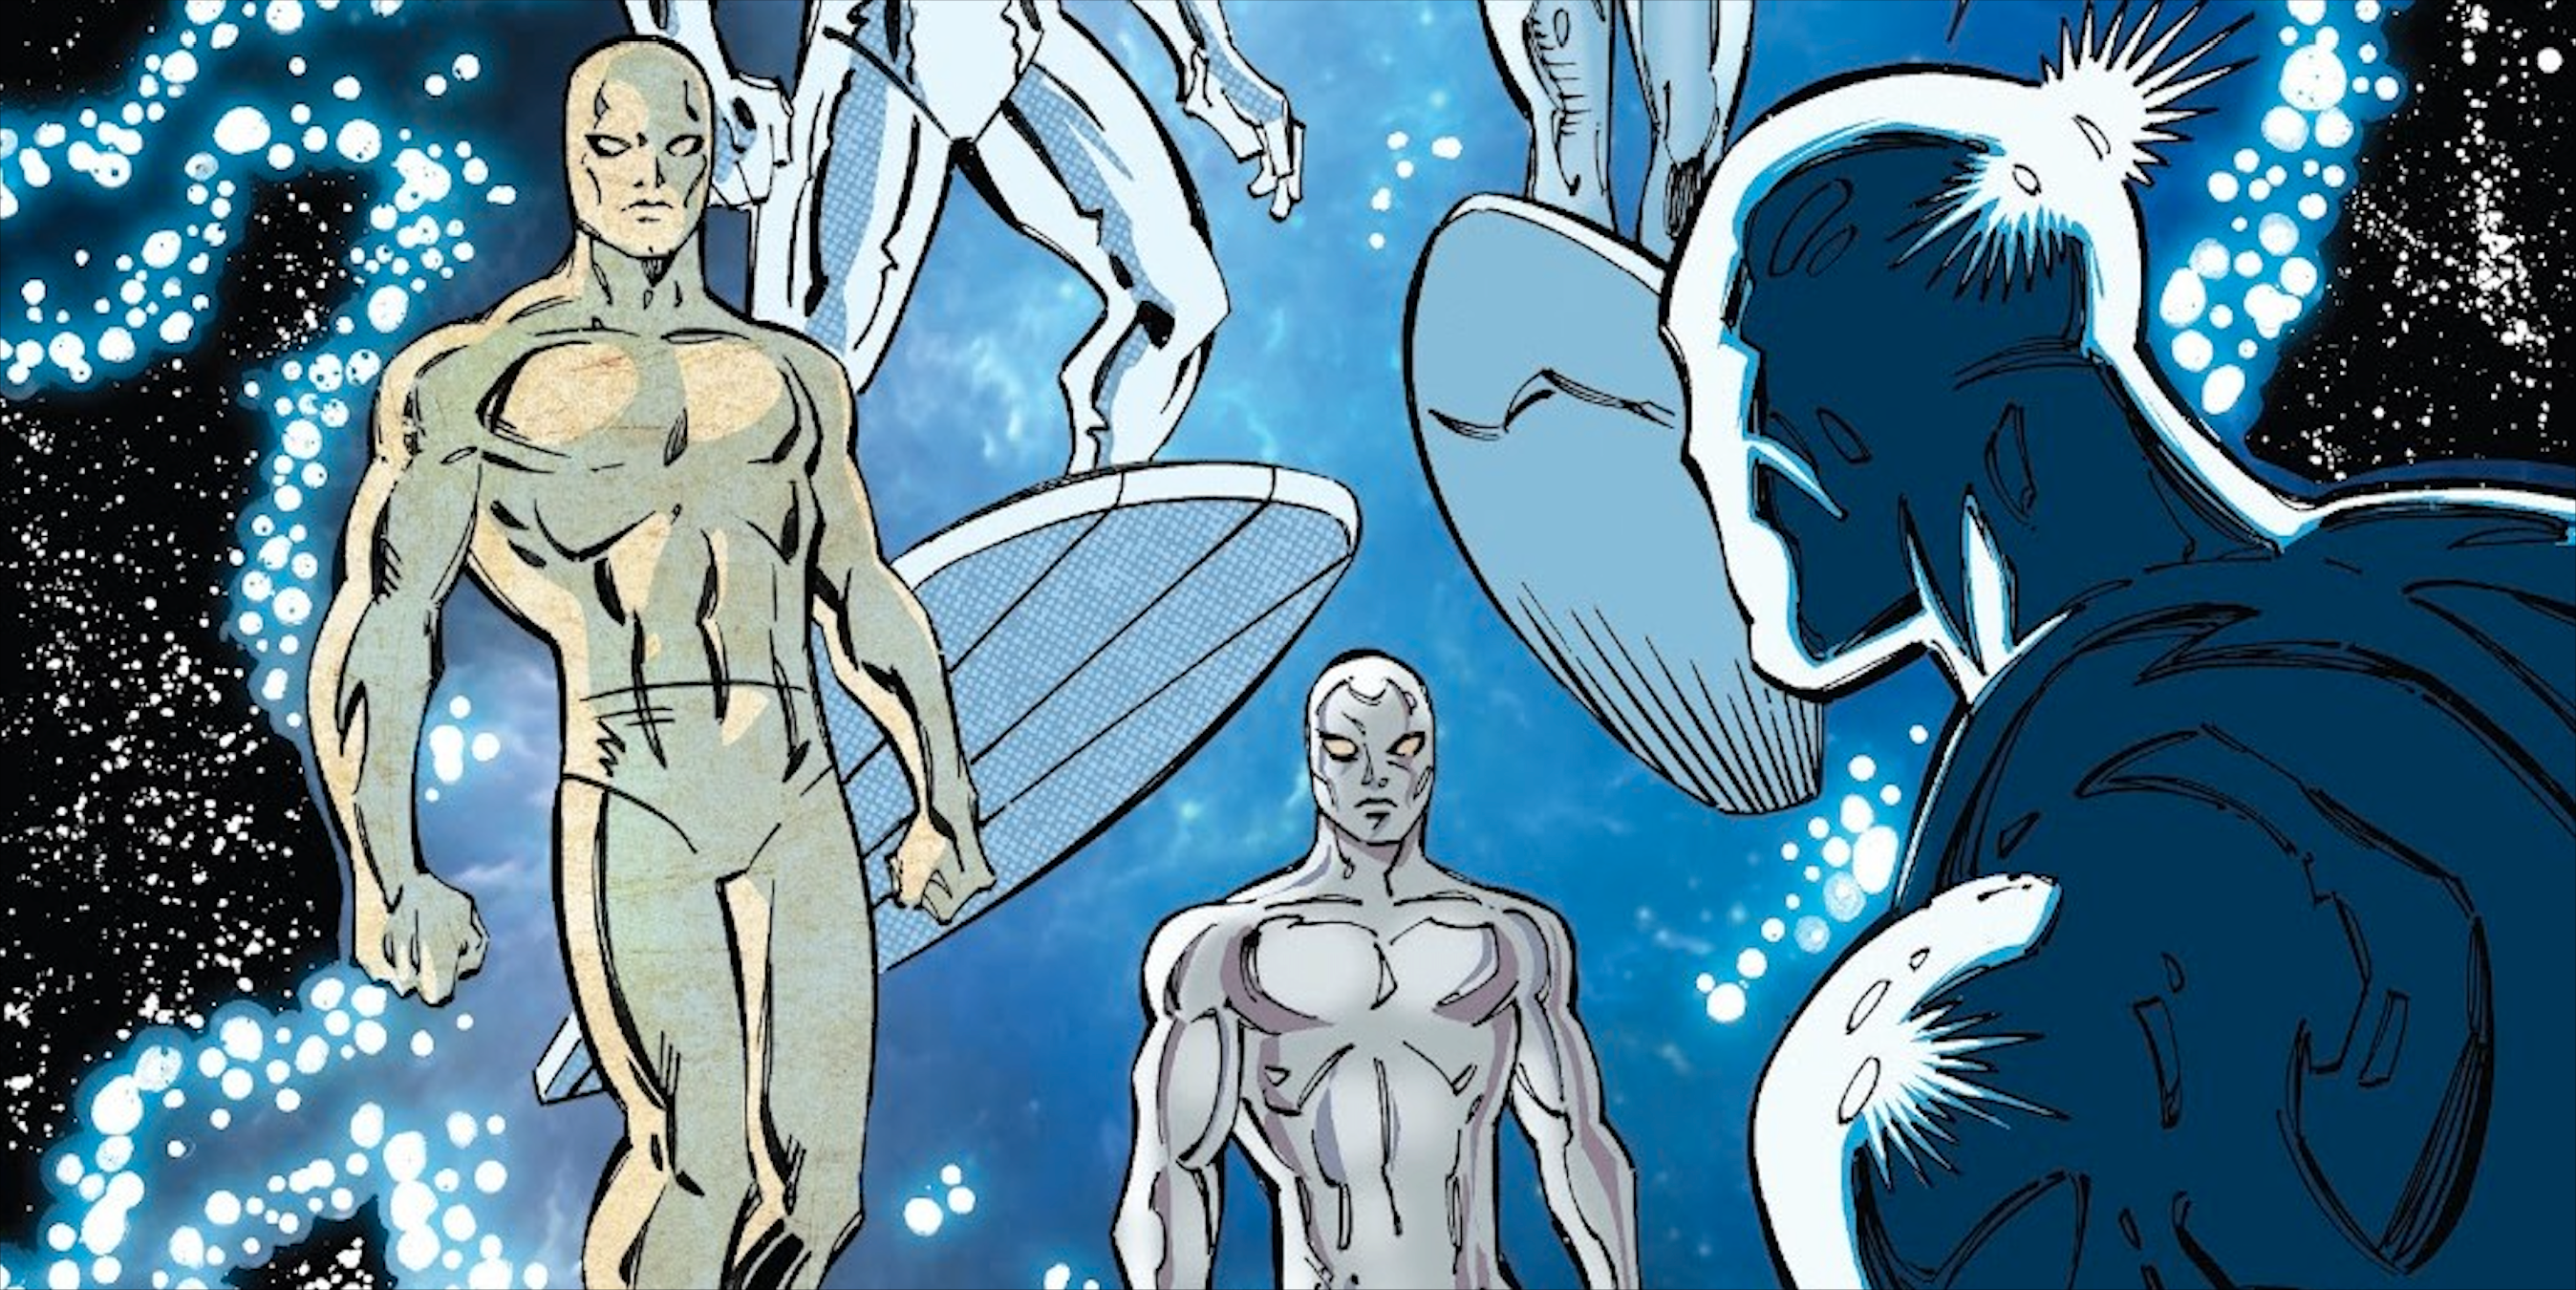 Silver Surfer acaba de reunir al equipo más poderoso de Marvel